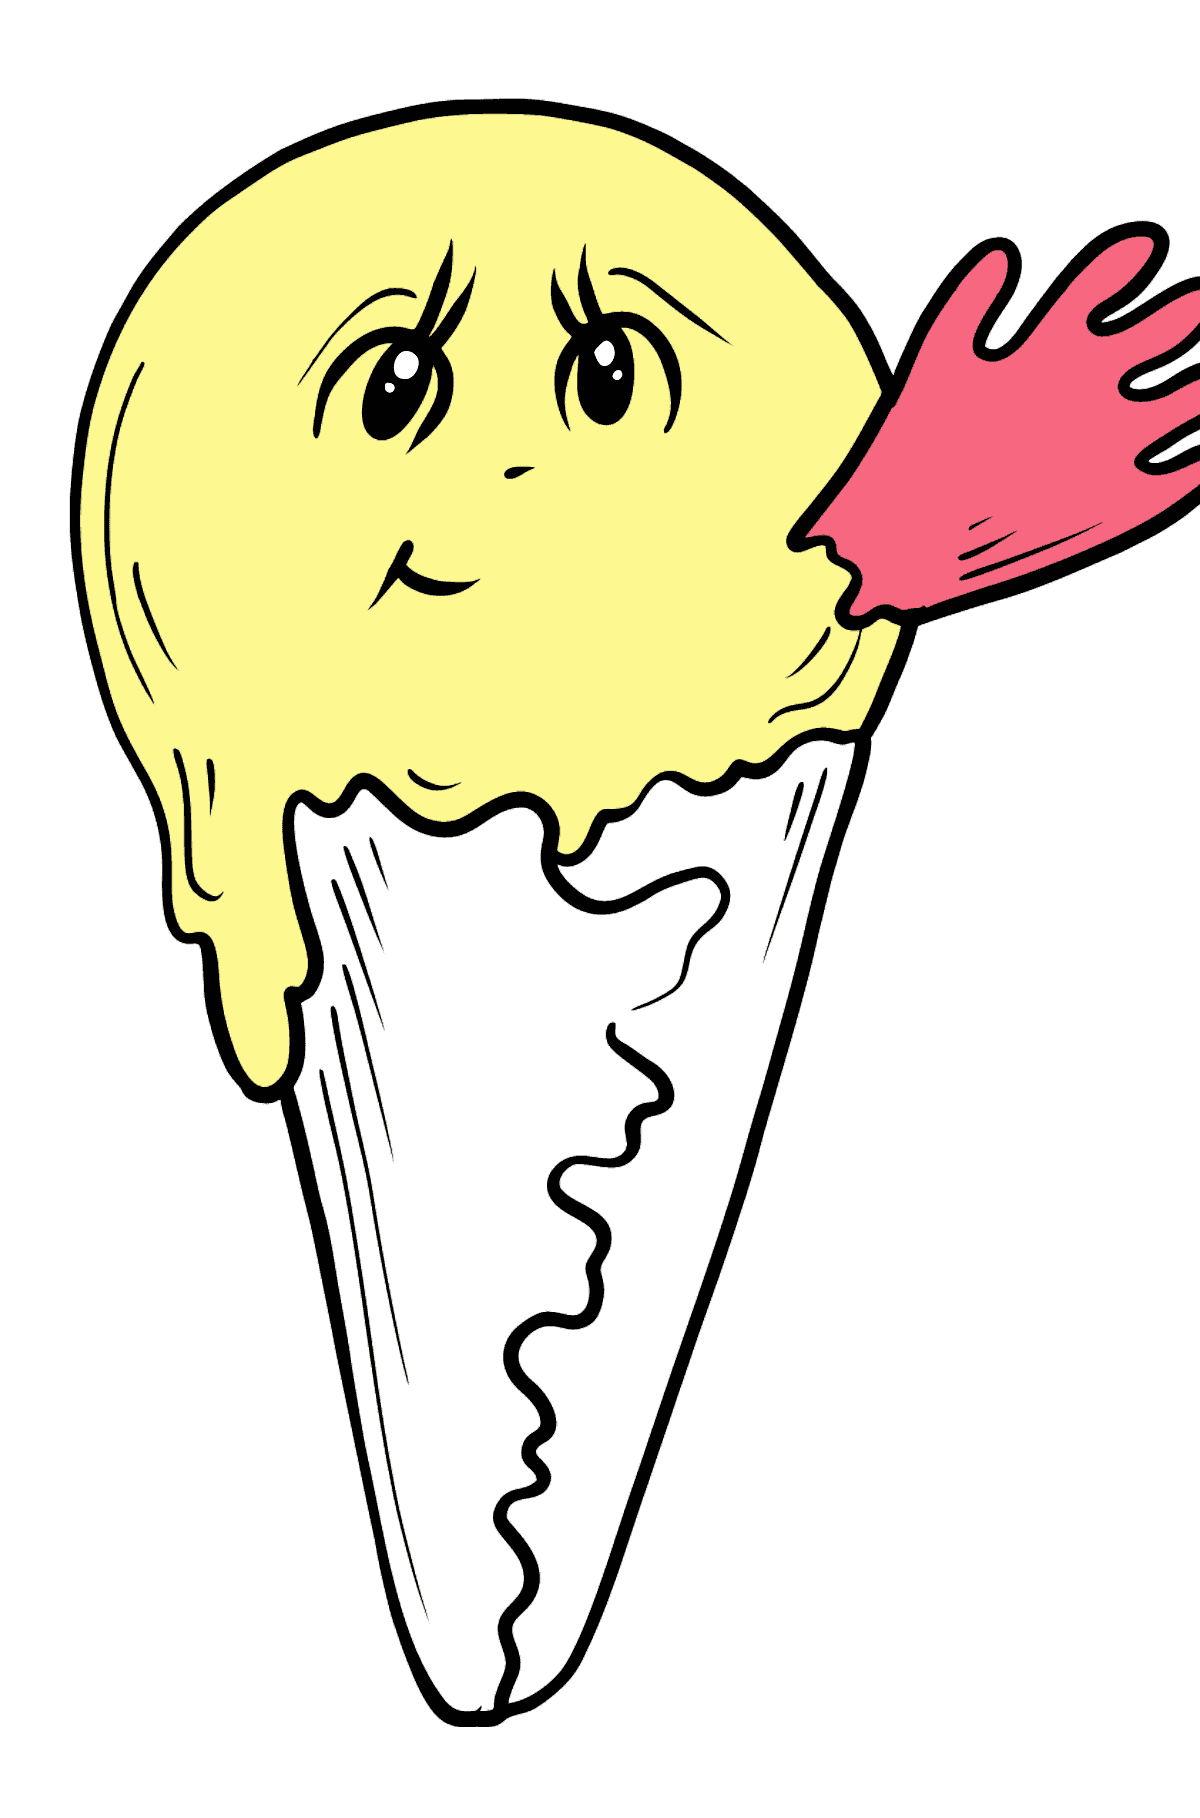 Coloriage - Crème glacée à la banane avec des yeux - Coloriages pour les Enfants